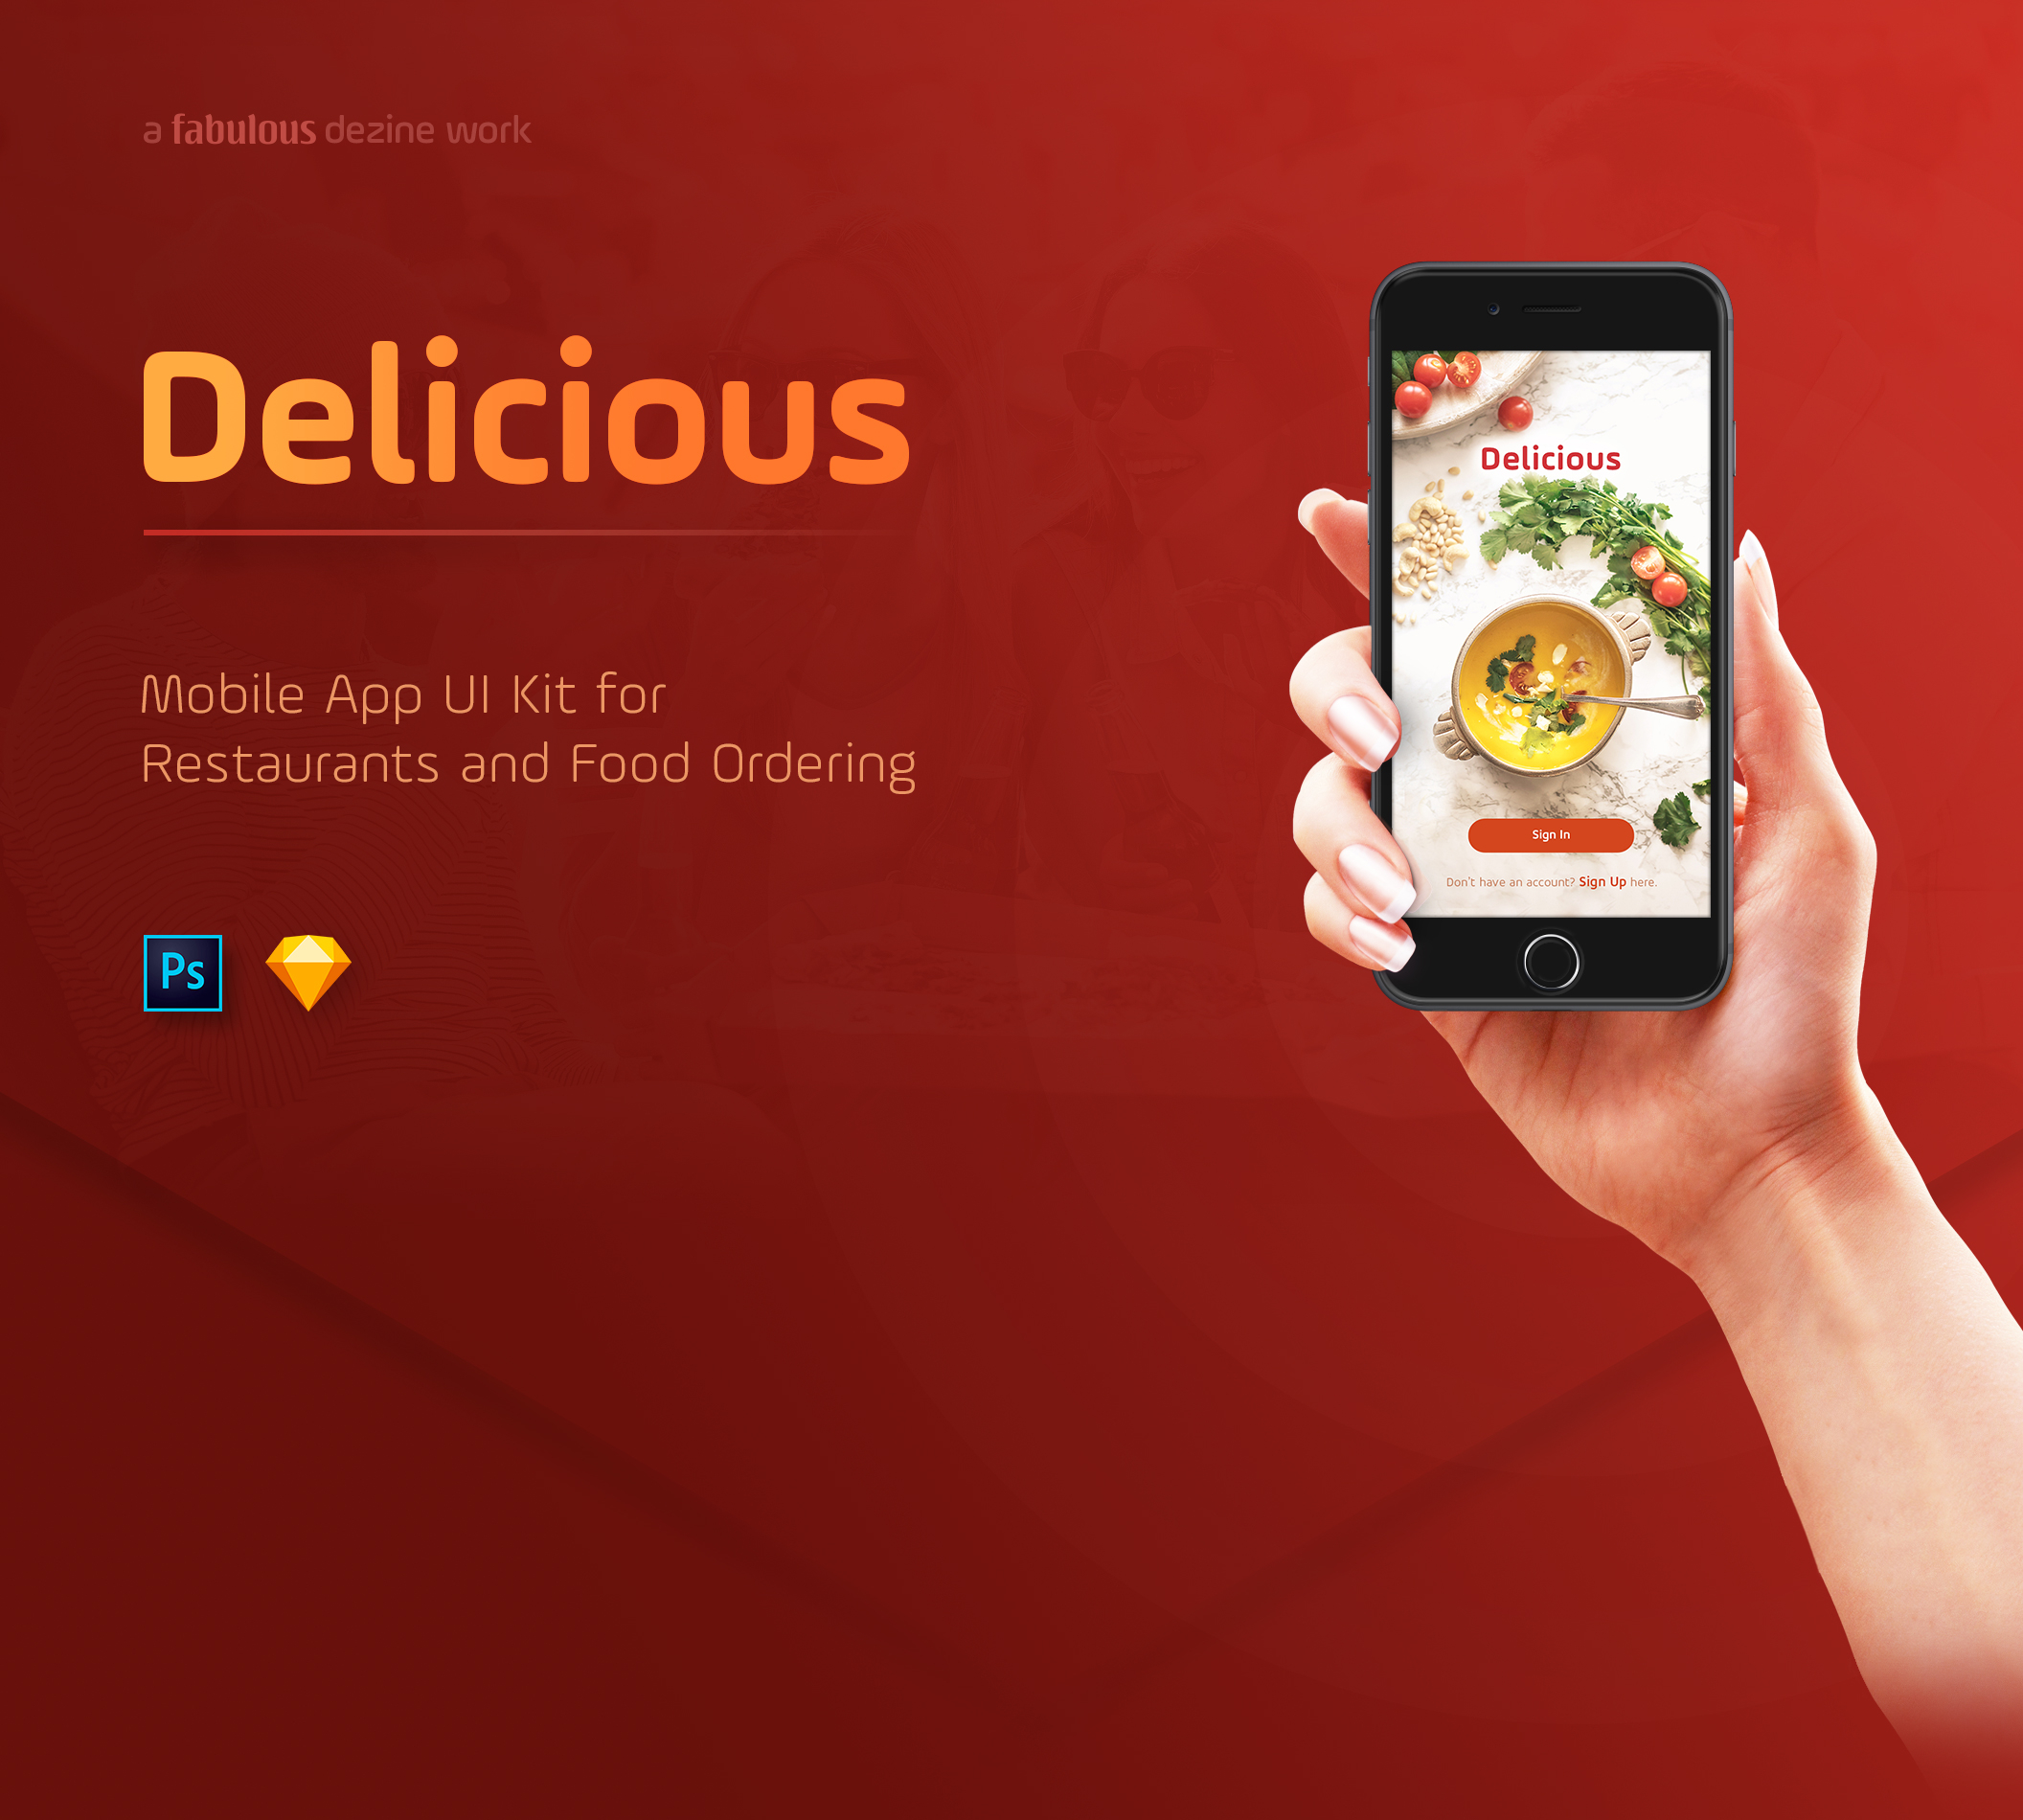 超级美食餐厅和食品订购的创意移动应用UI工具包 Delicious Ui Kit  [PSD&Sketch]插图